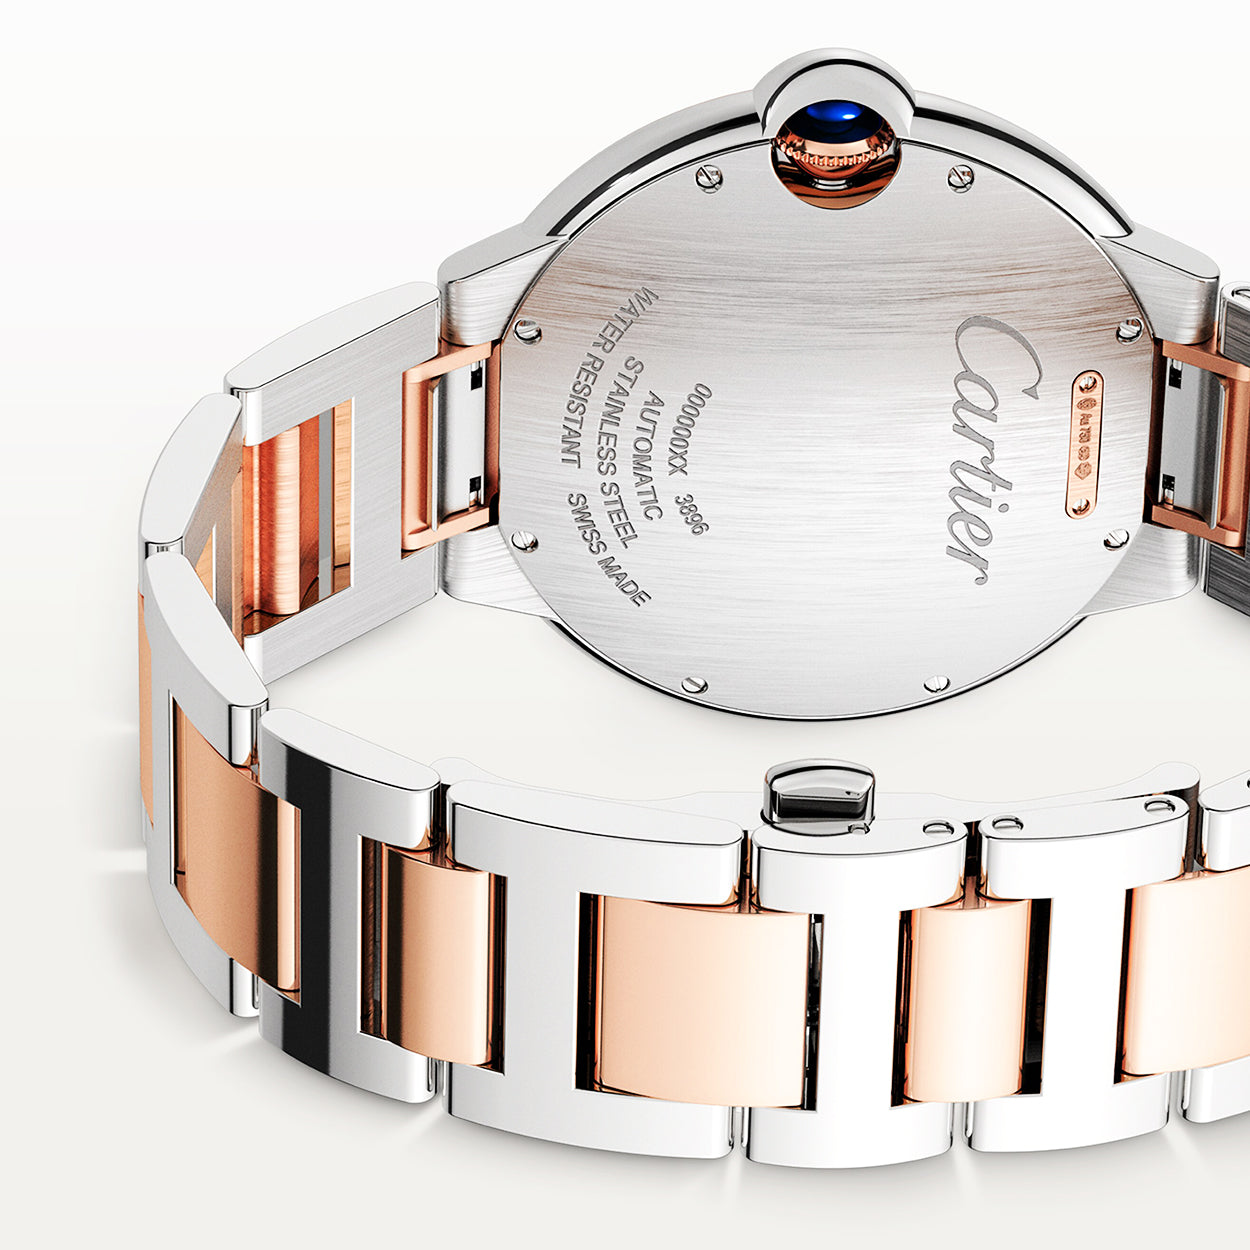 Ballon Bleu 42mm Two-Tone Silver Dial Men's Automatic Bracelet Watch